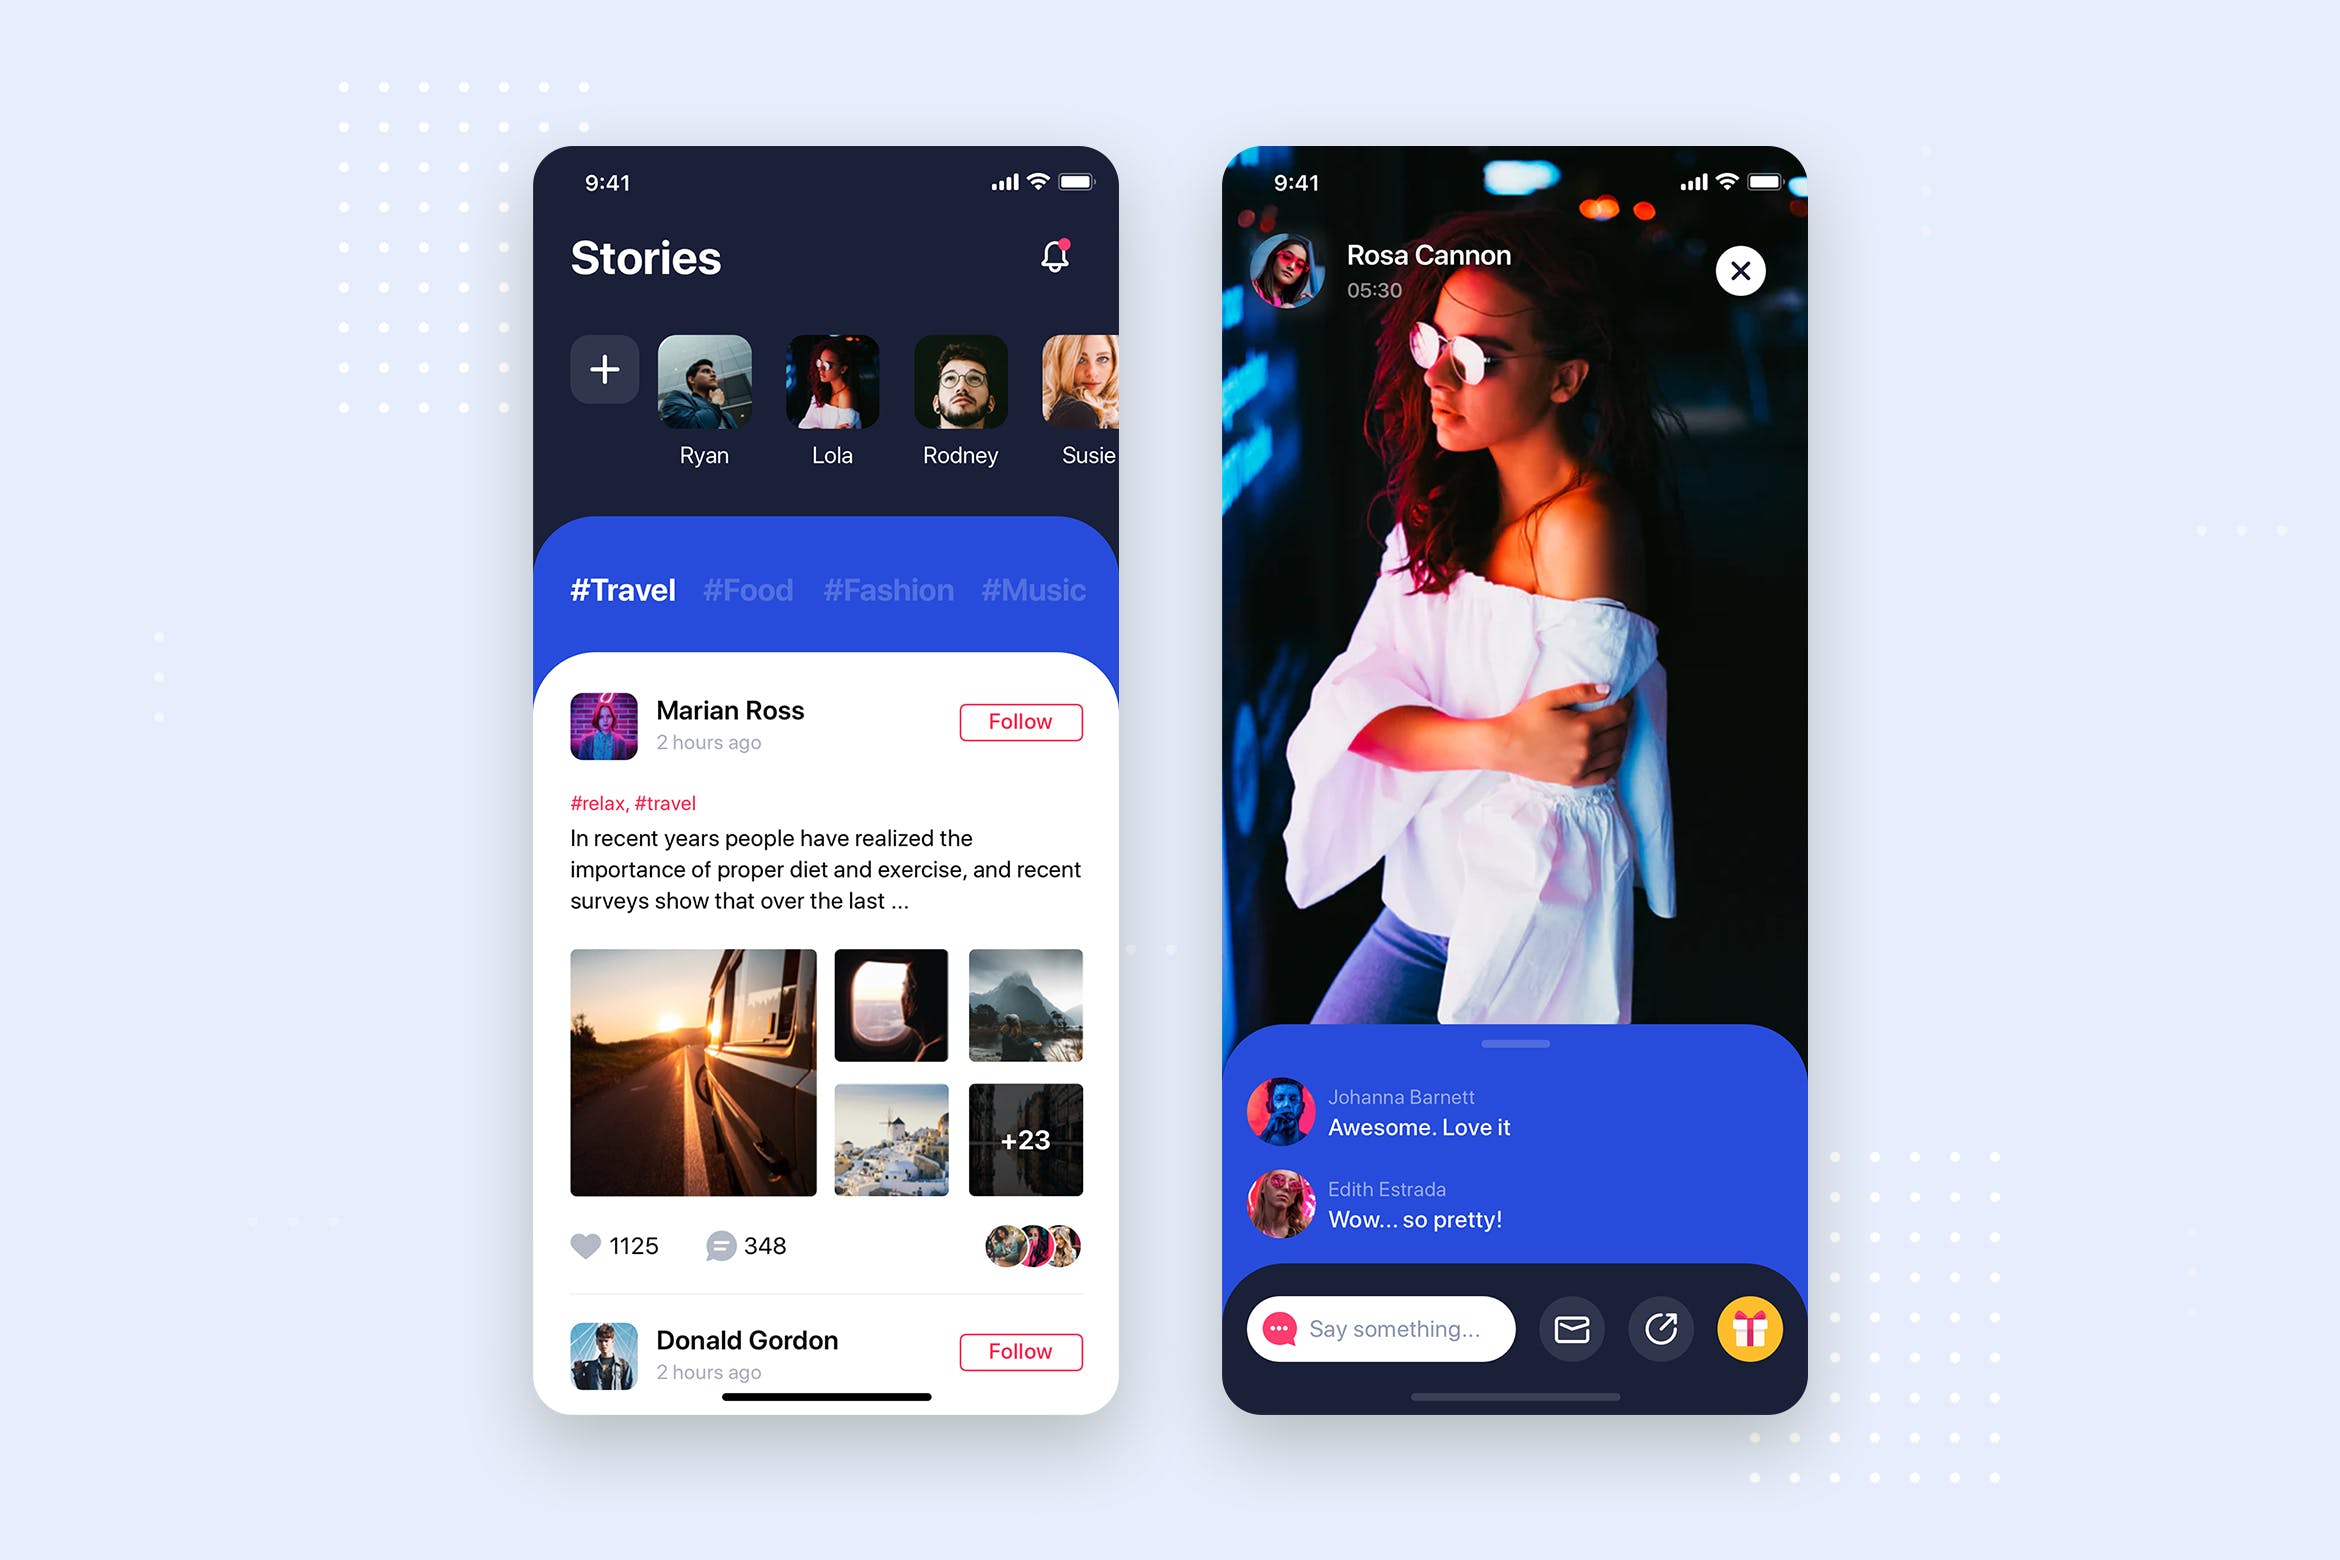 社交APP应用频道列表&详情界面设计素材库精选模板 Social Stories Mobile App UI Kit Template插图